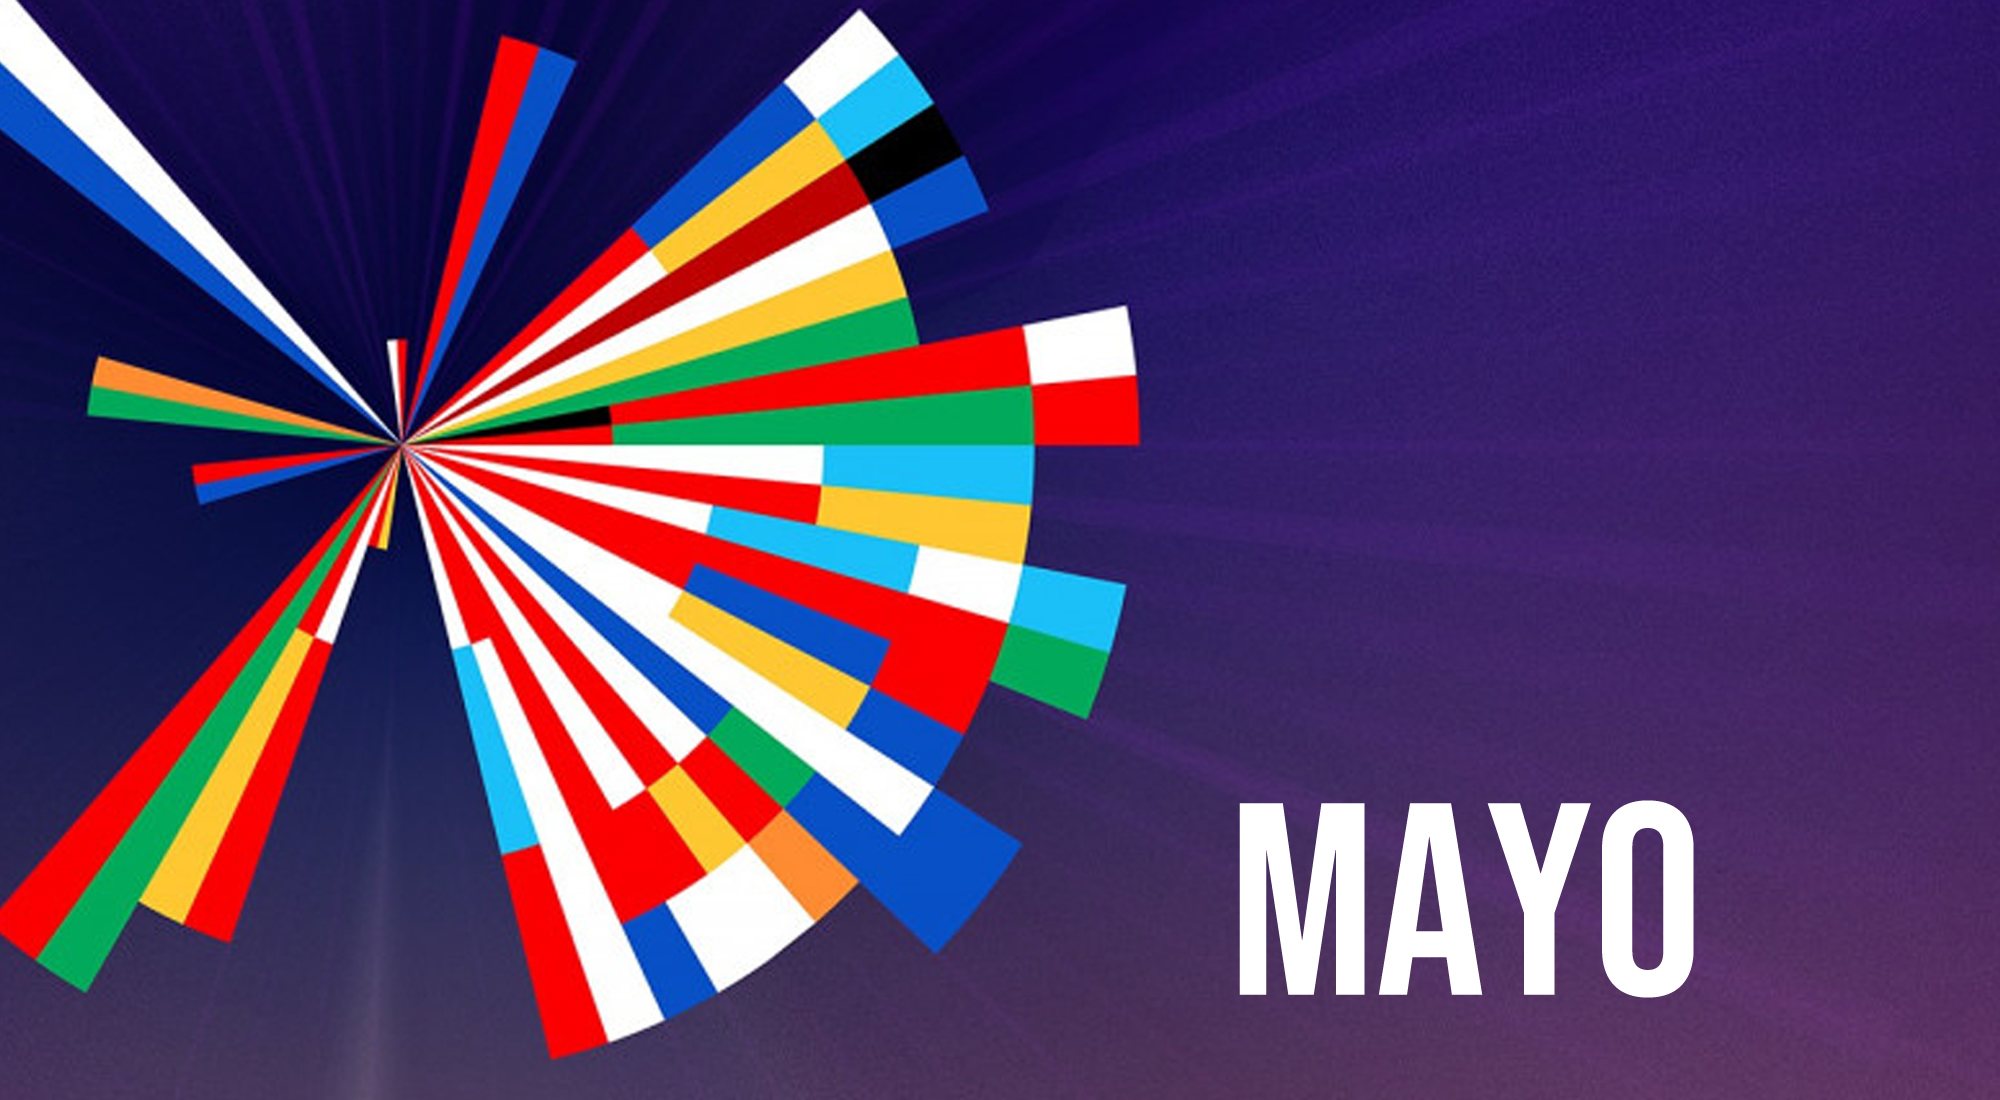 El Festival de Eurovisión 2021 se celebra en mayo